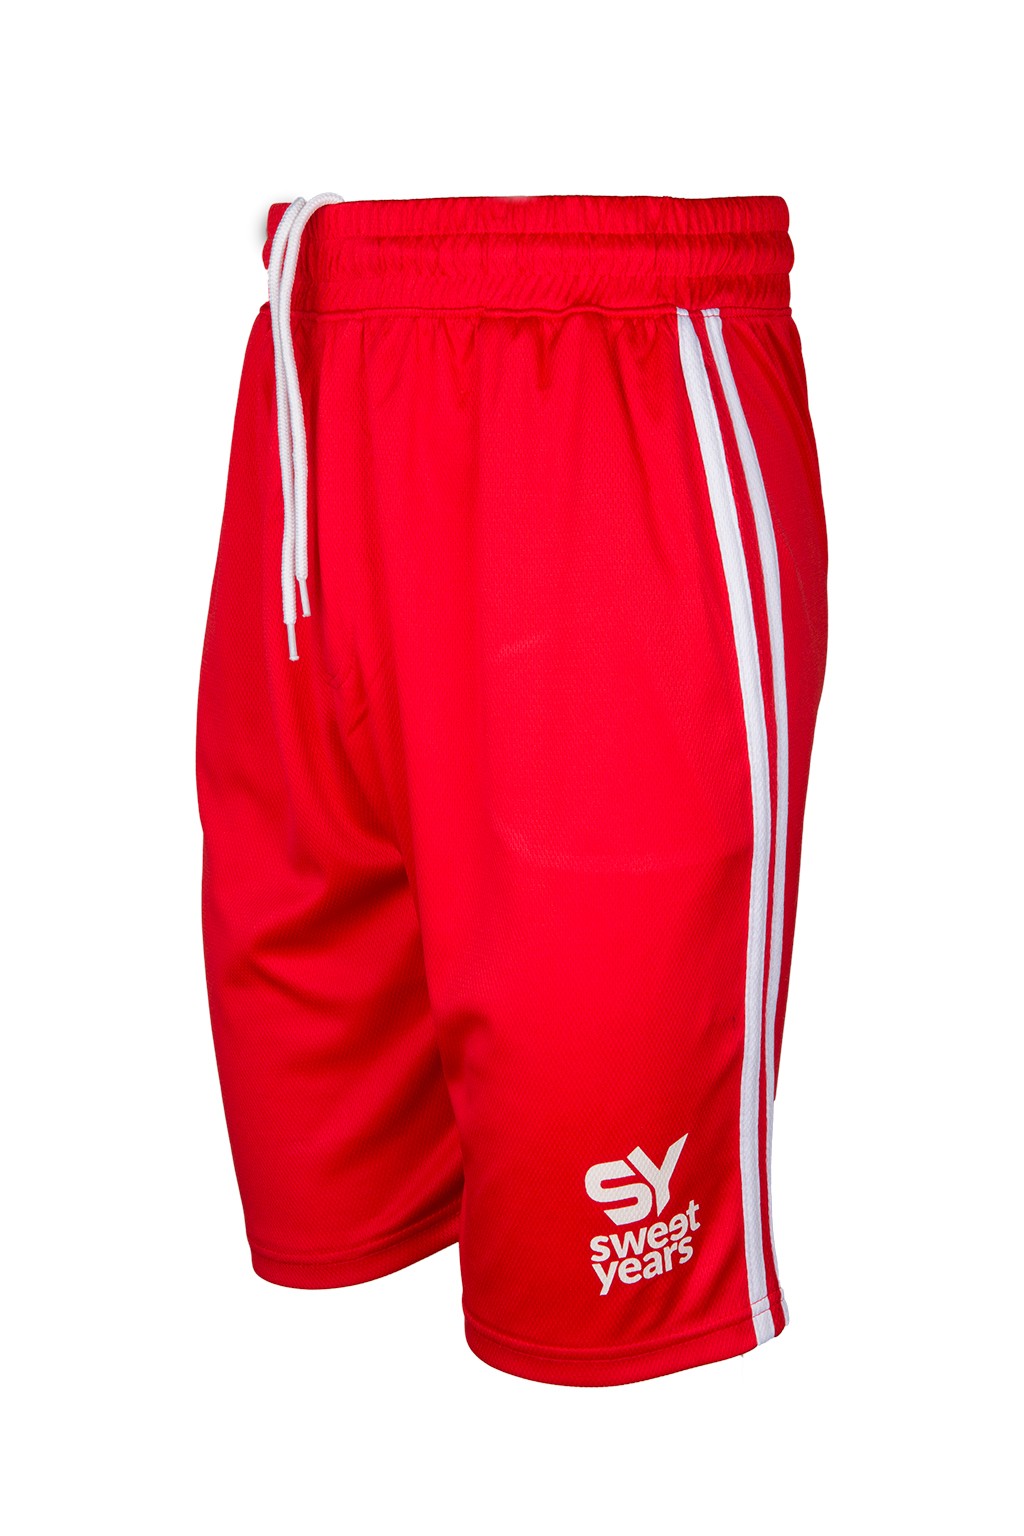 Pantaloncini da uomo in tessuto tecnico di colore rosso con bande verticali e marchio in contrasto Sweet Years.